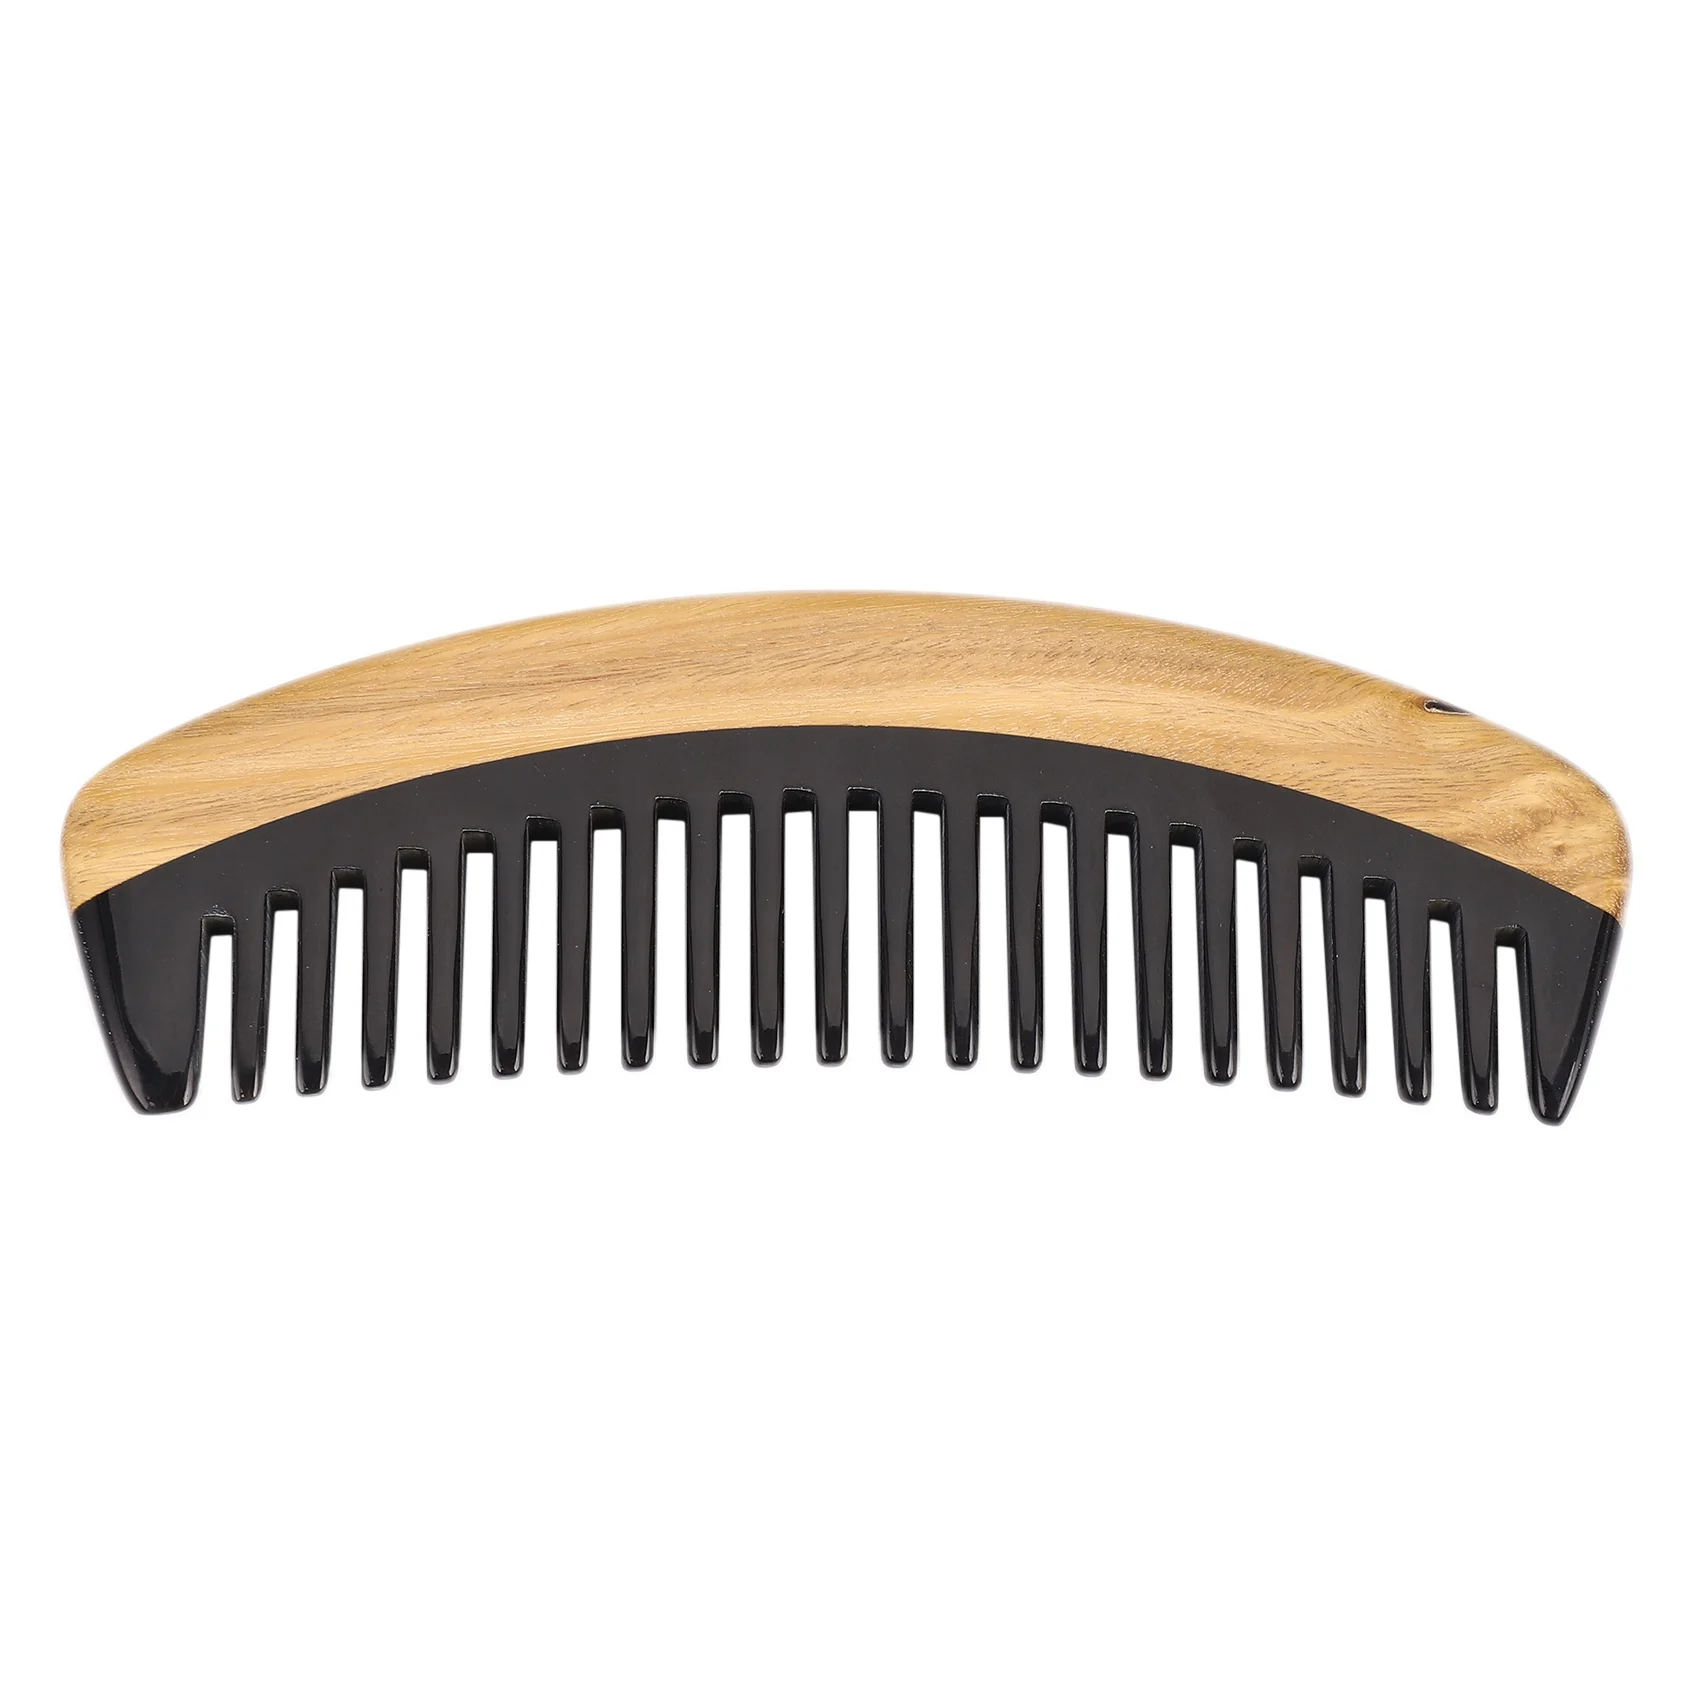 

Гребень для волос-деревянная расческа с широкими зубьями для распутывания вьющихся волос-гребень без статического массажа из сандалового дерева для мужчин и женщин